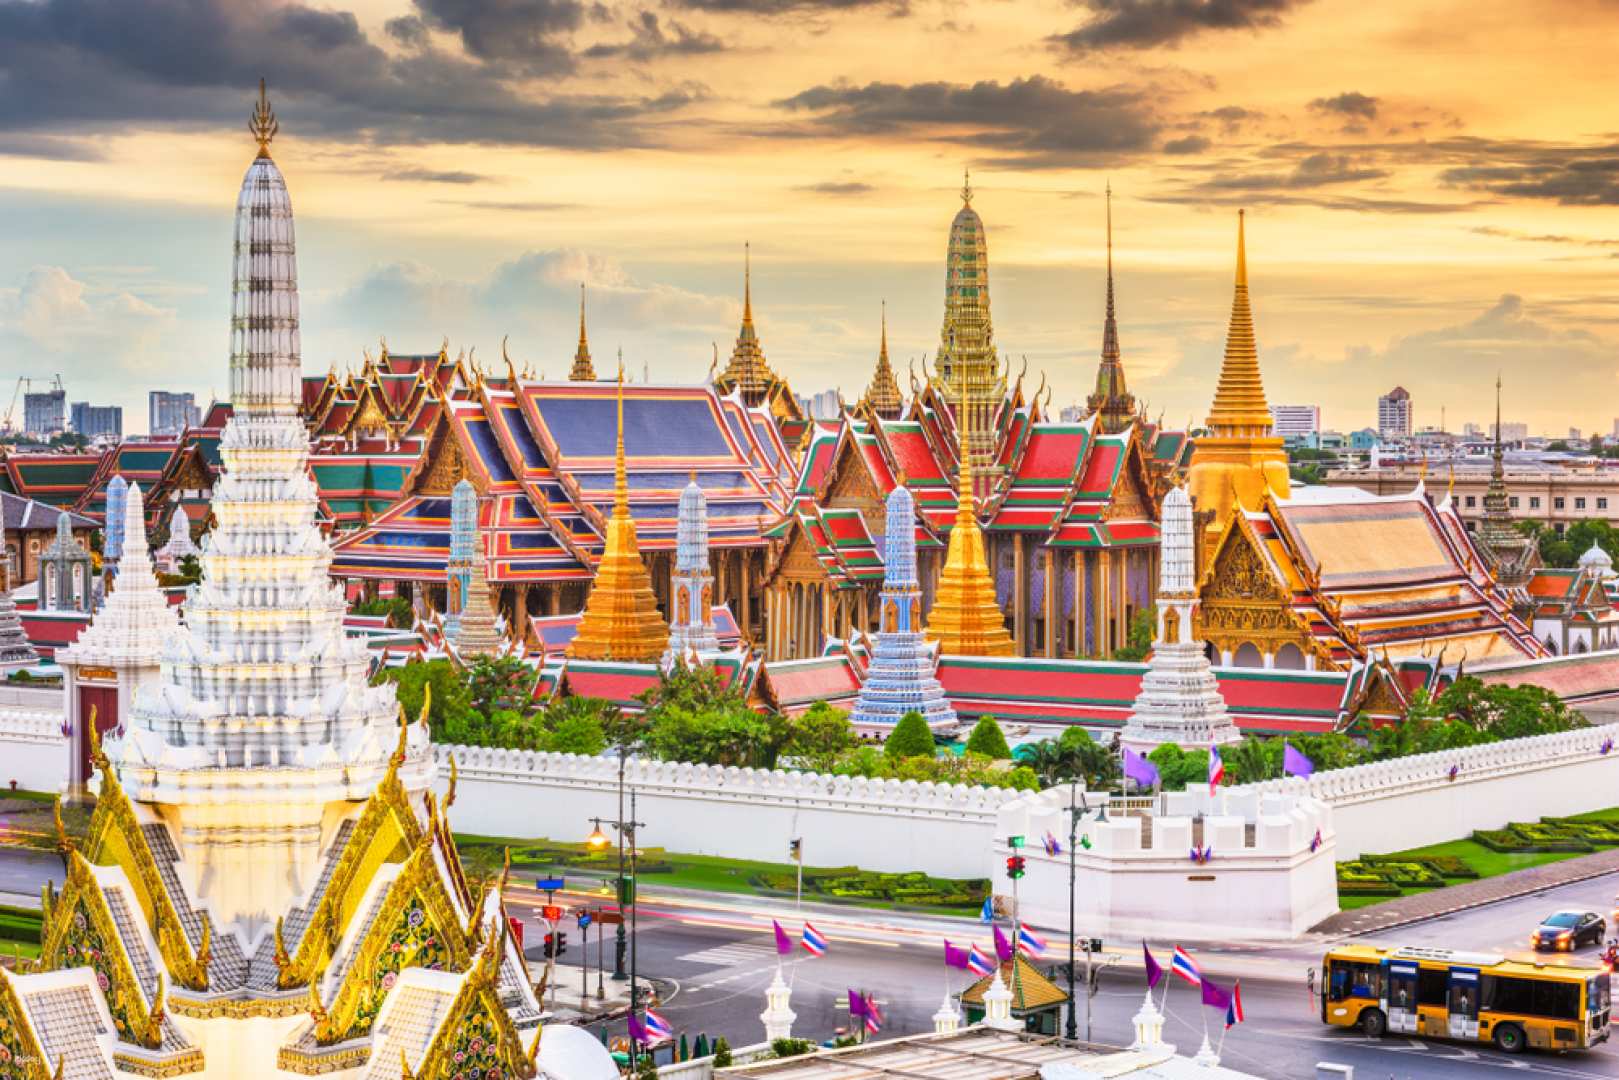 泰國-曼谷大皇宮和玉佛寺導覽之旅